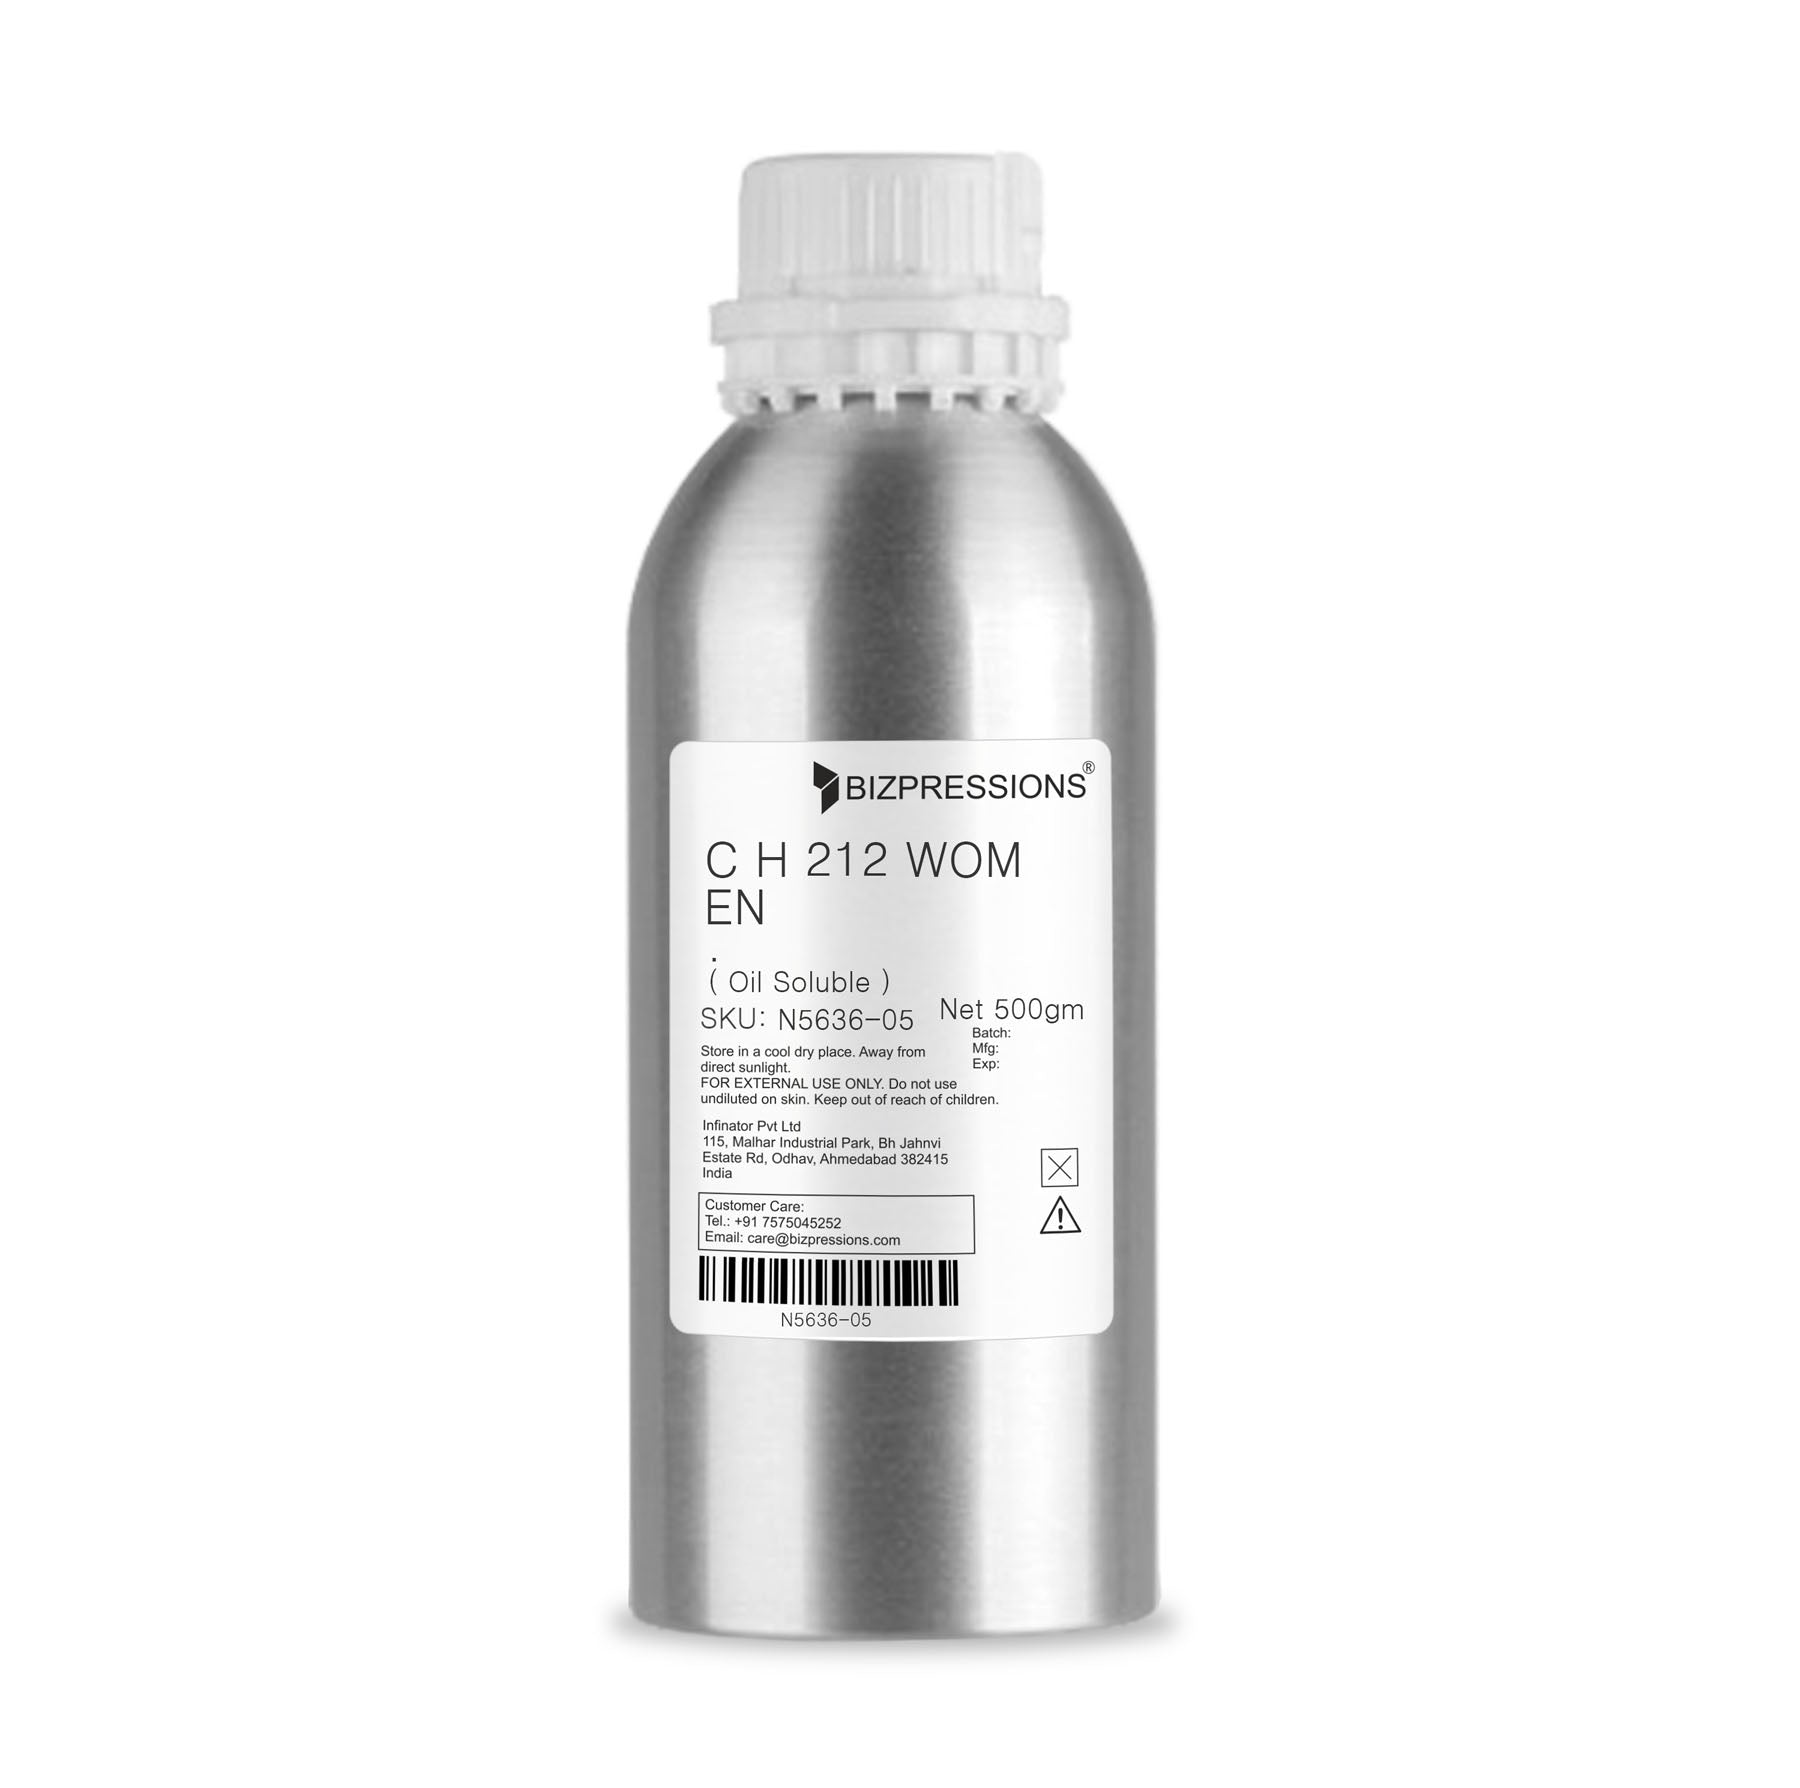 C H 212 WOMEN - Fragrance ( Oil Soluble ) - 500 gm